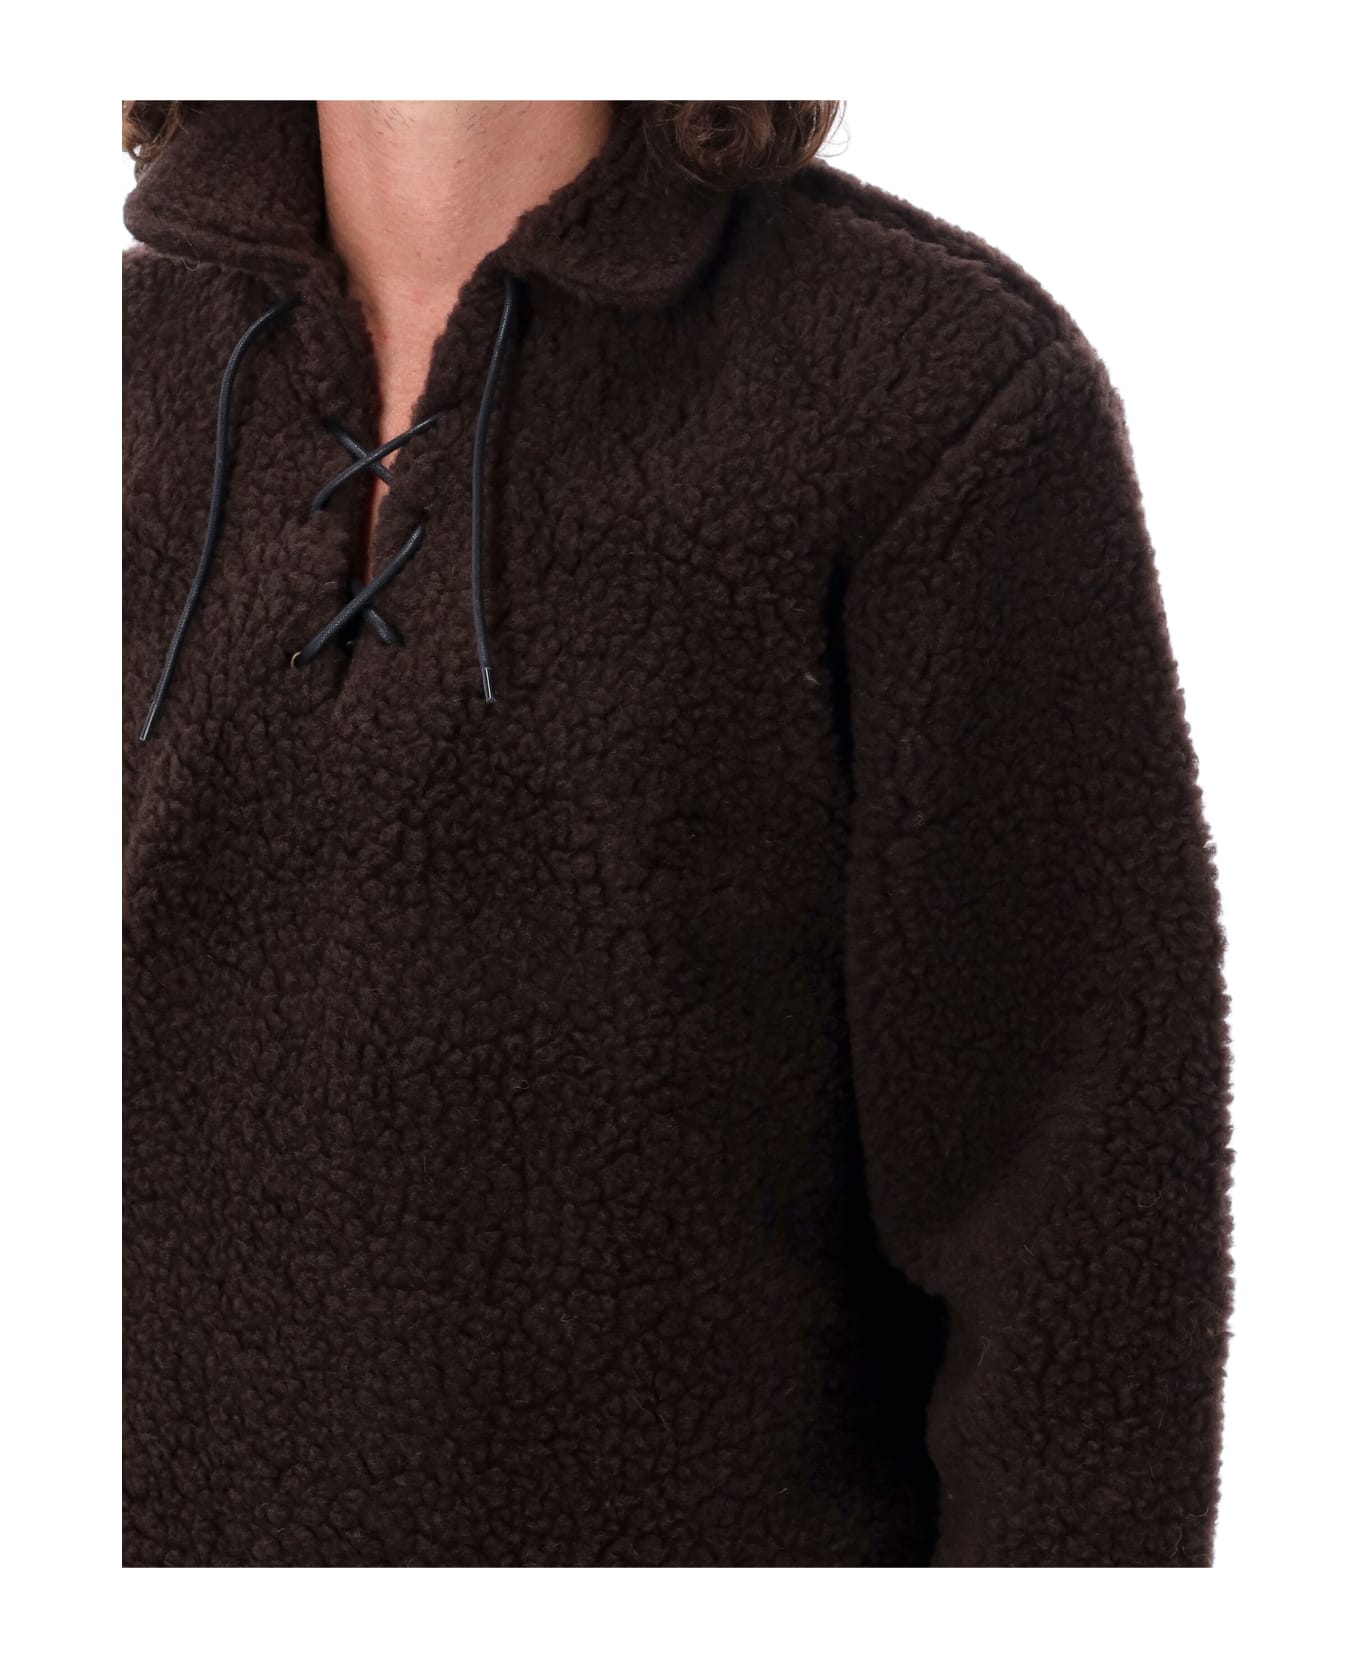 Bode Fleece Tie-up Pullover - DK BROWN